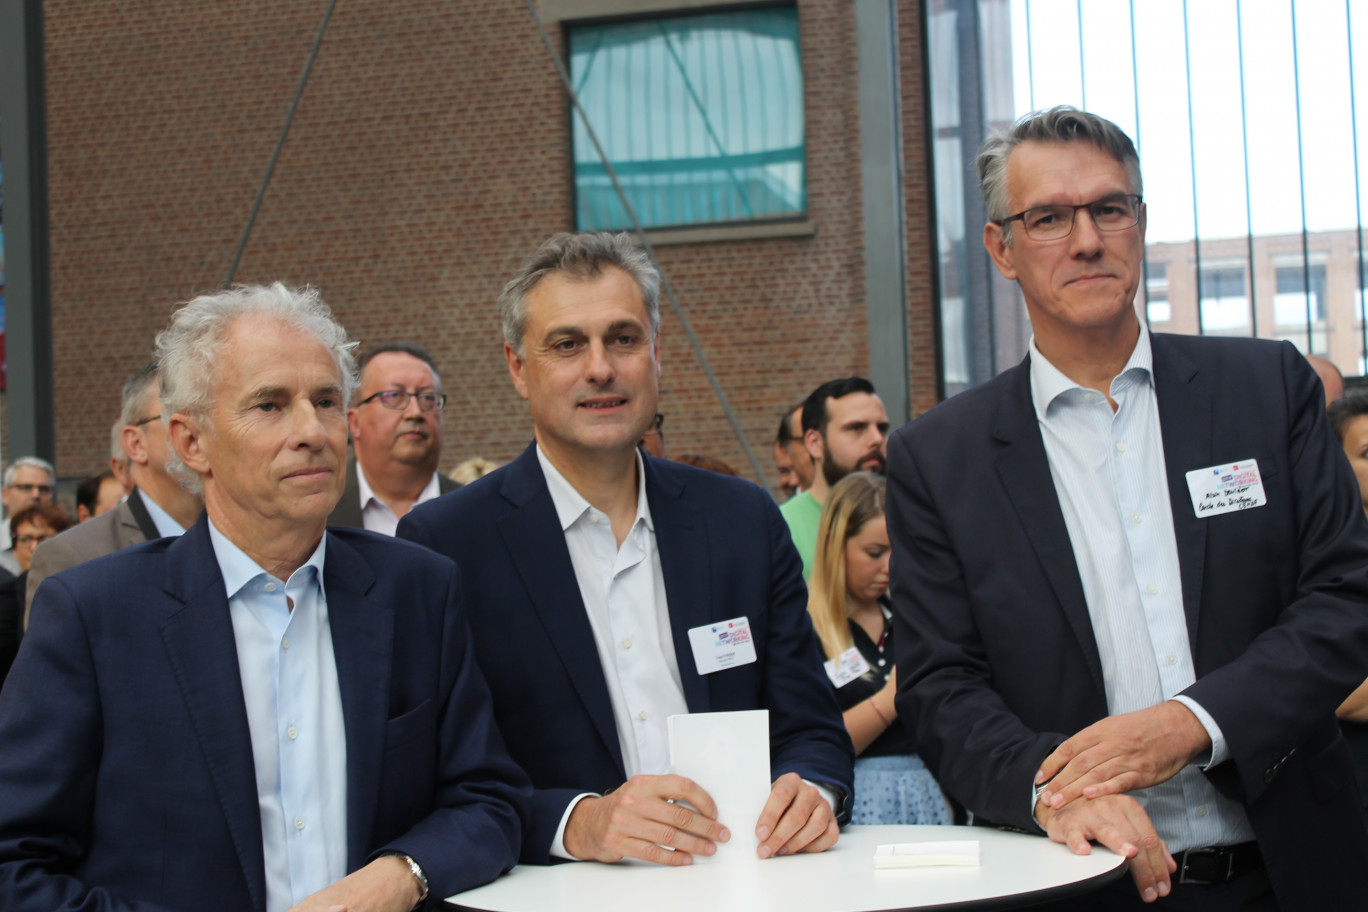 De gauche à droite, Fabrice Bouvier, Directeur Général de la Banque Populaire du Nord, Yves Tyrode, Directeur Général du Groupe BPCE en charge du digital, et Alain Denizot, Président du Directoire de la Caisse d'Epargne Hauts de France.